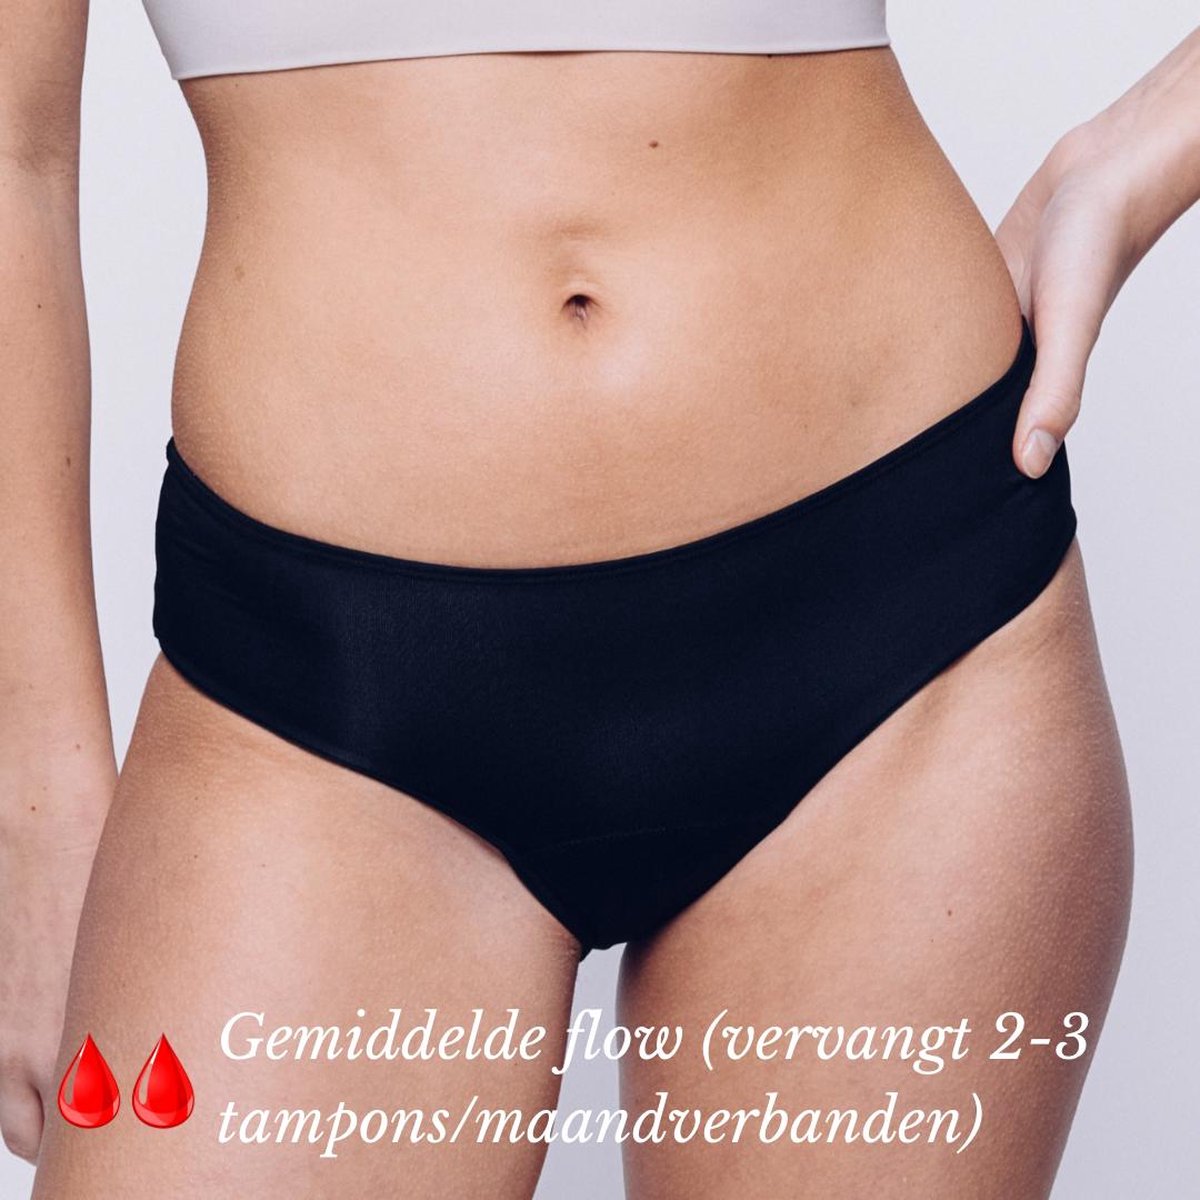 Menstruatie Ondergoed - Period Underwear - Menstruatieslip - Menstruatie Onderbroekje - XS - Classic - MyFleury®